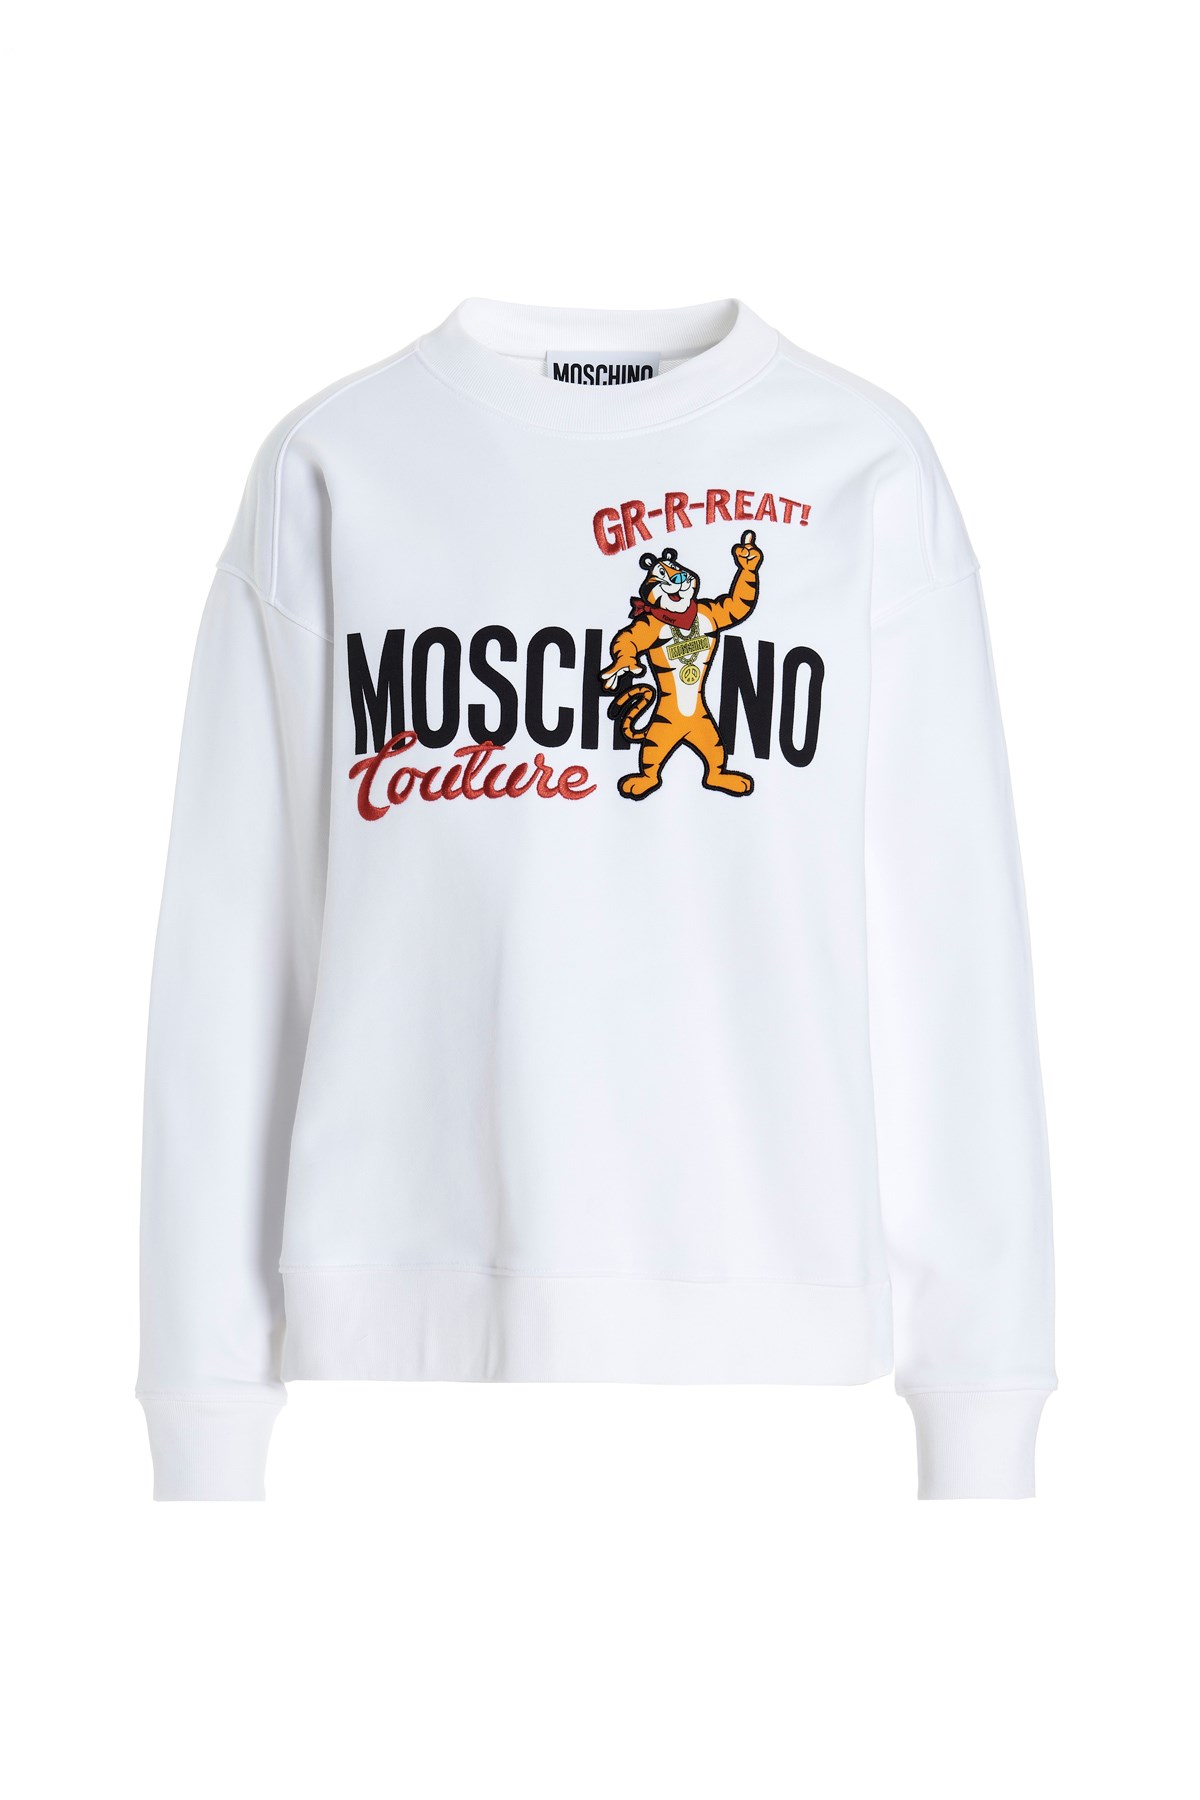 MOSCHINO Moschino Kapsel Year Of The Tiger Sweatshirt